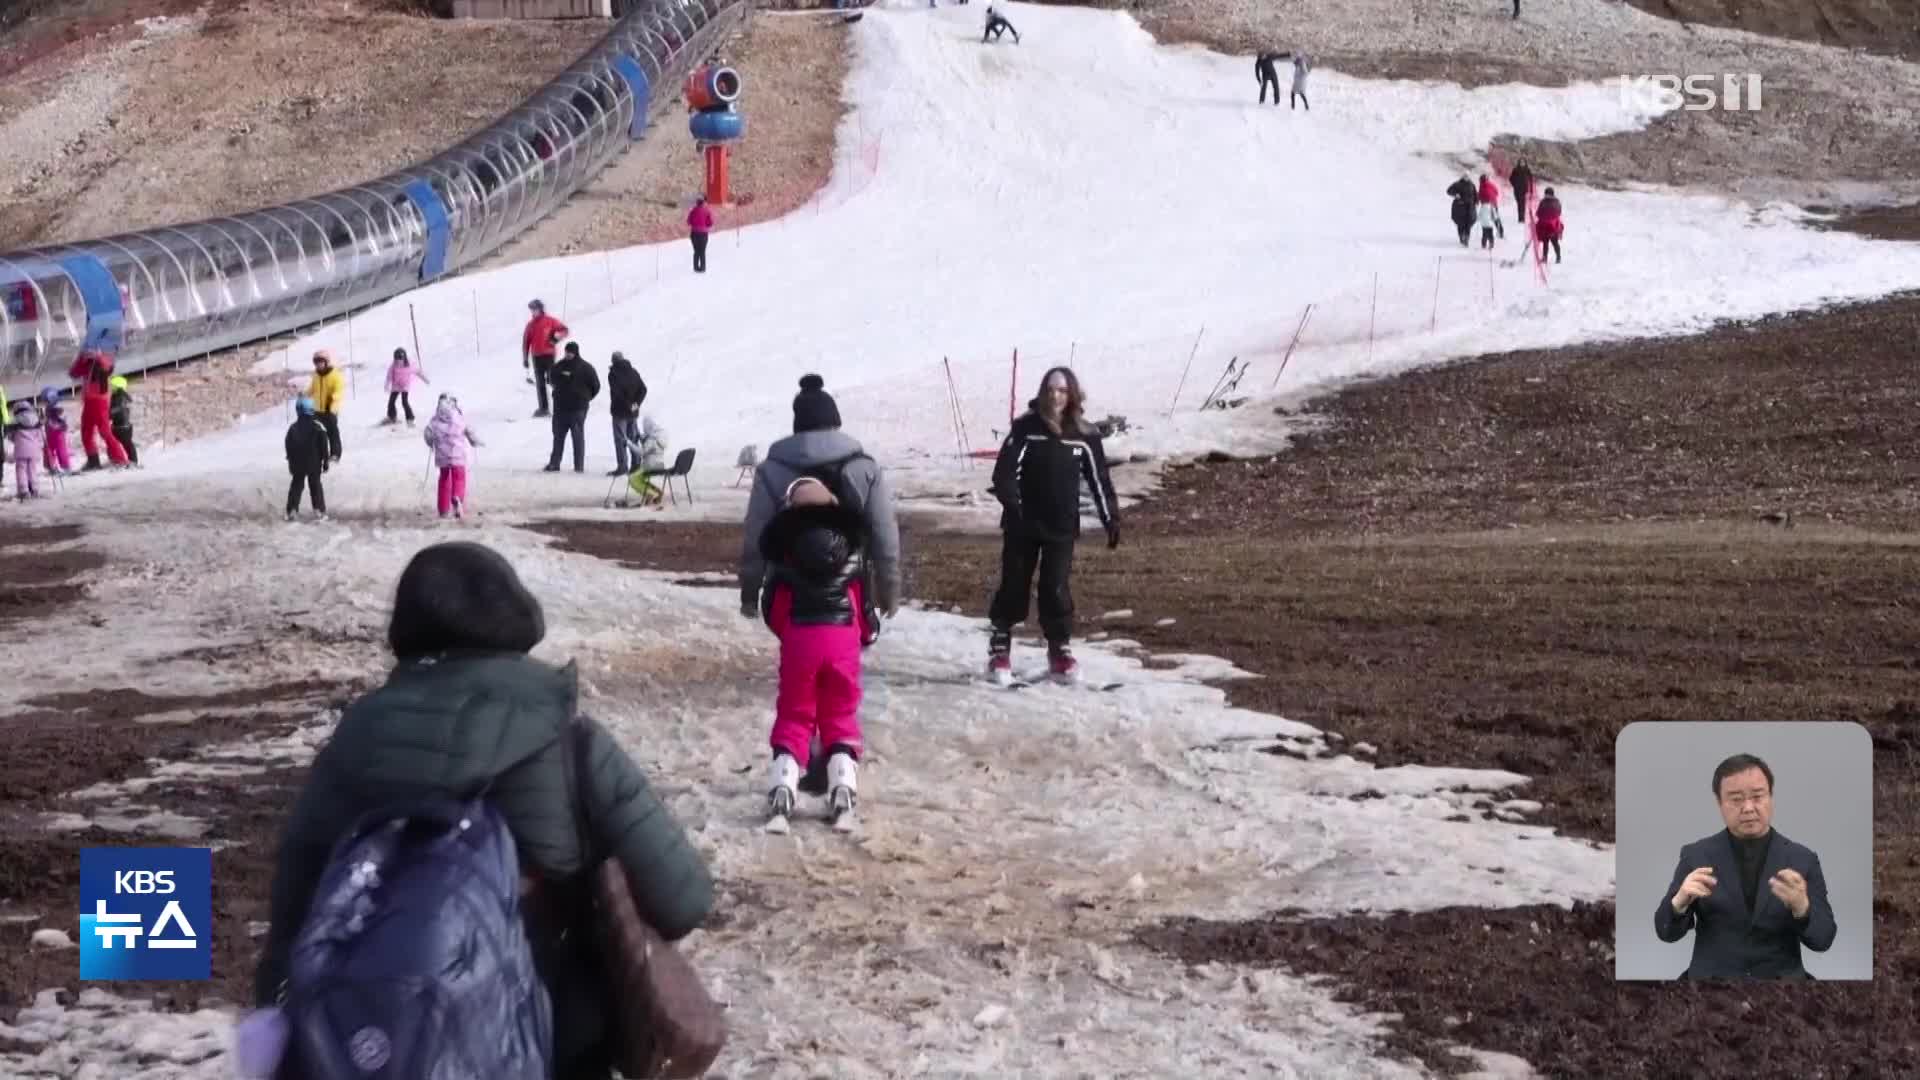 동계올림픽 열렸던 곳인데…“진흙탕 된 스키장”